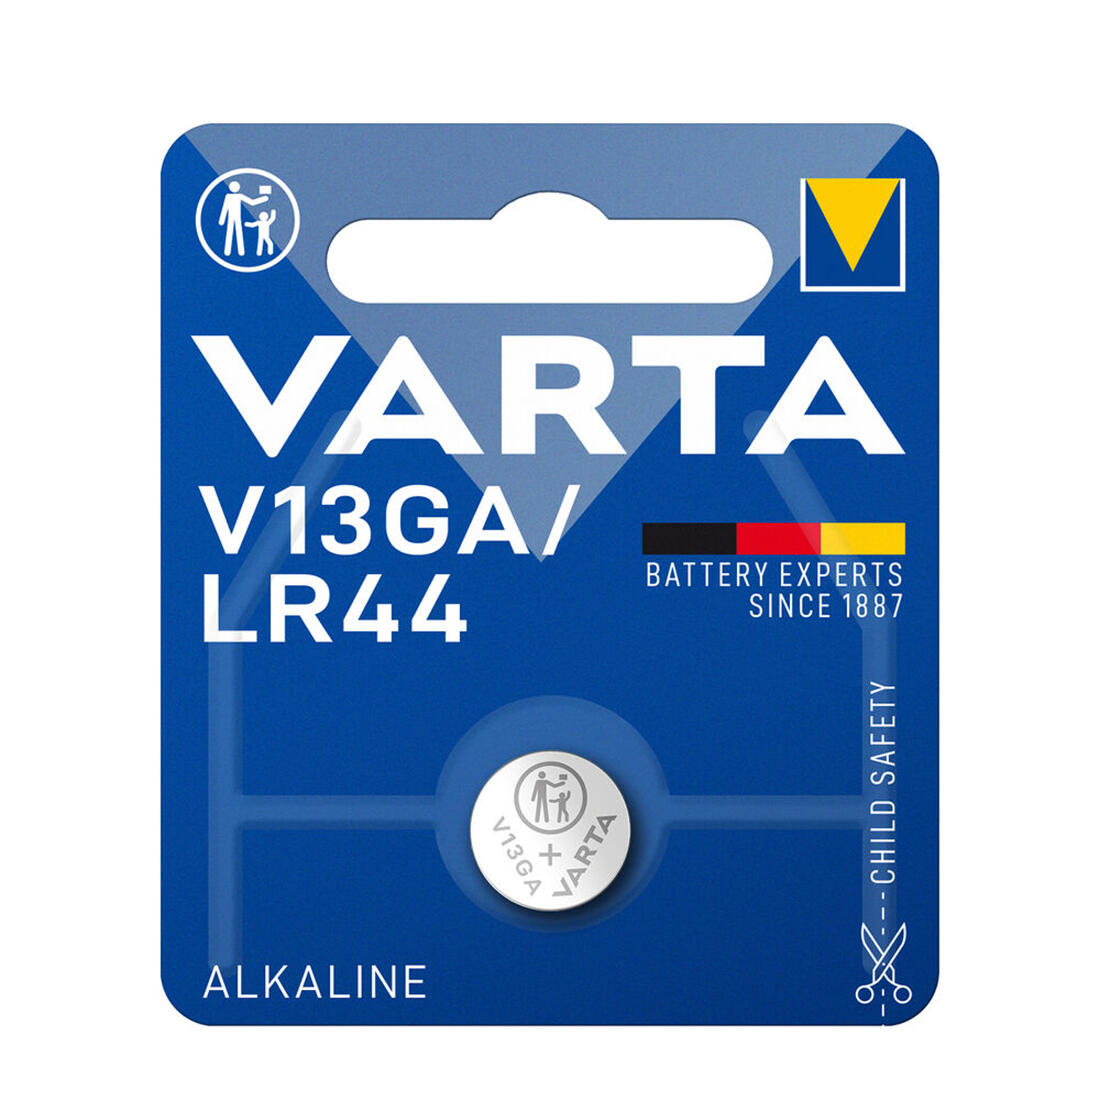 baterie knoflíková V13GA/LR44 alkalická VARTA 0.01 Kg MAXMIX Sklad14 129174 132